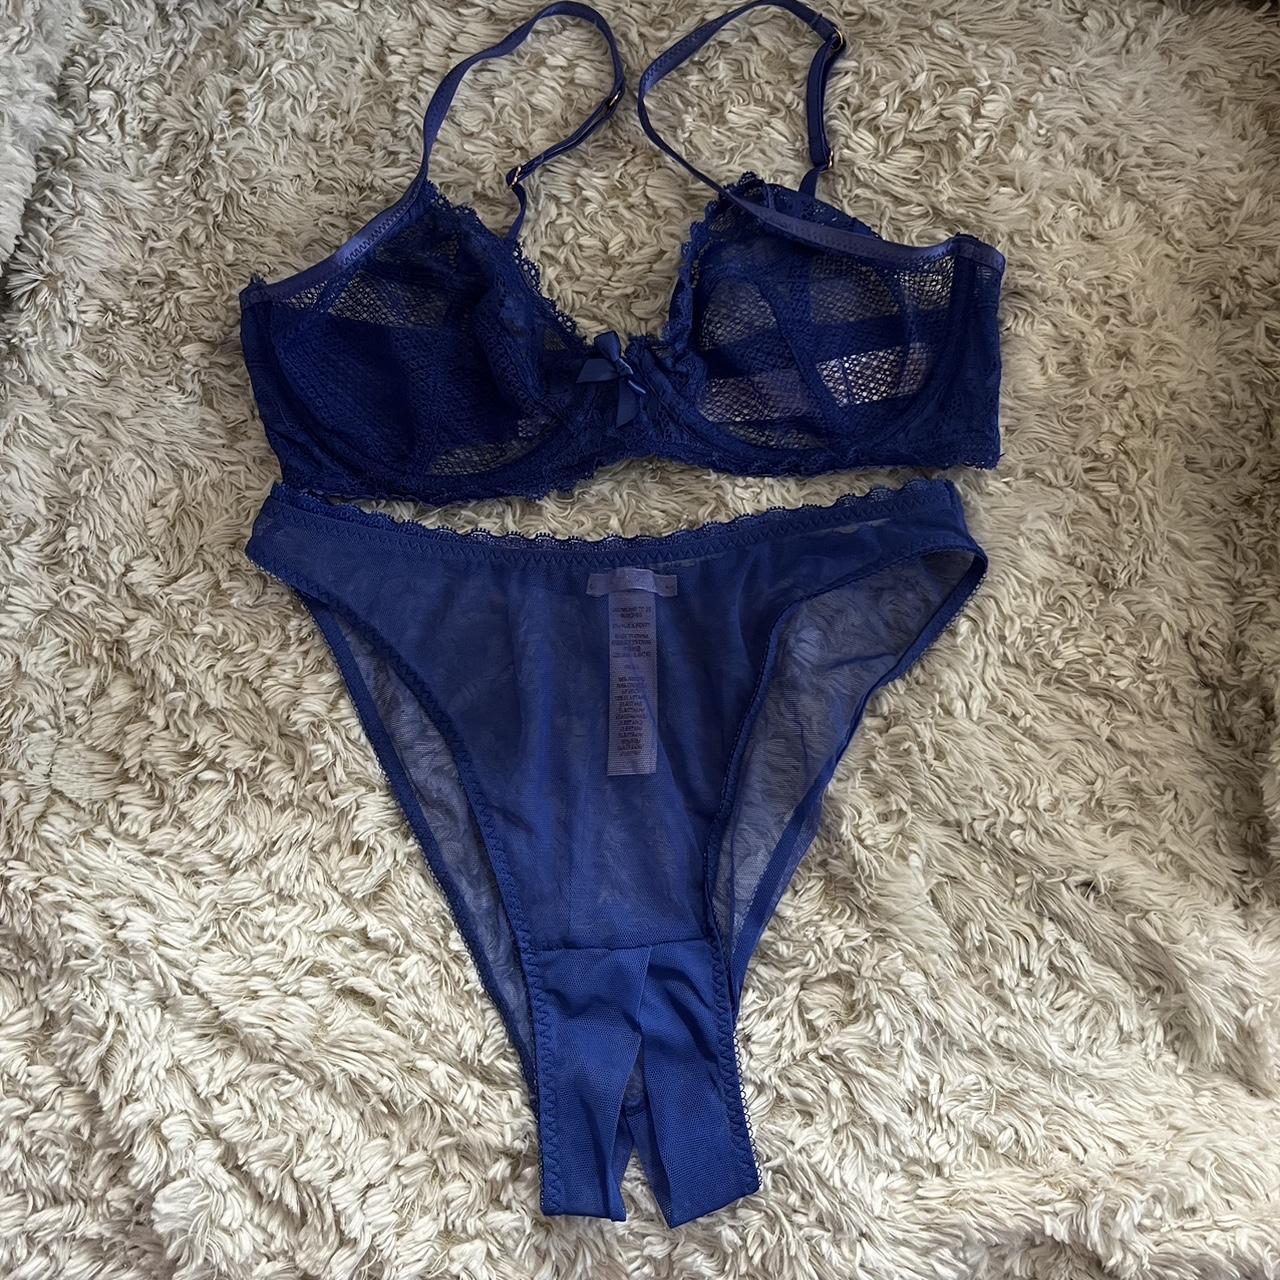 Savage x Fenty Women's Blue Underwear | Depop